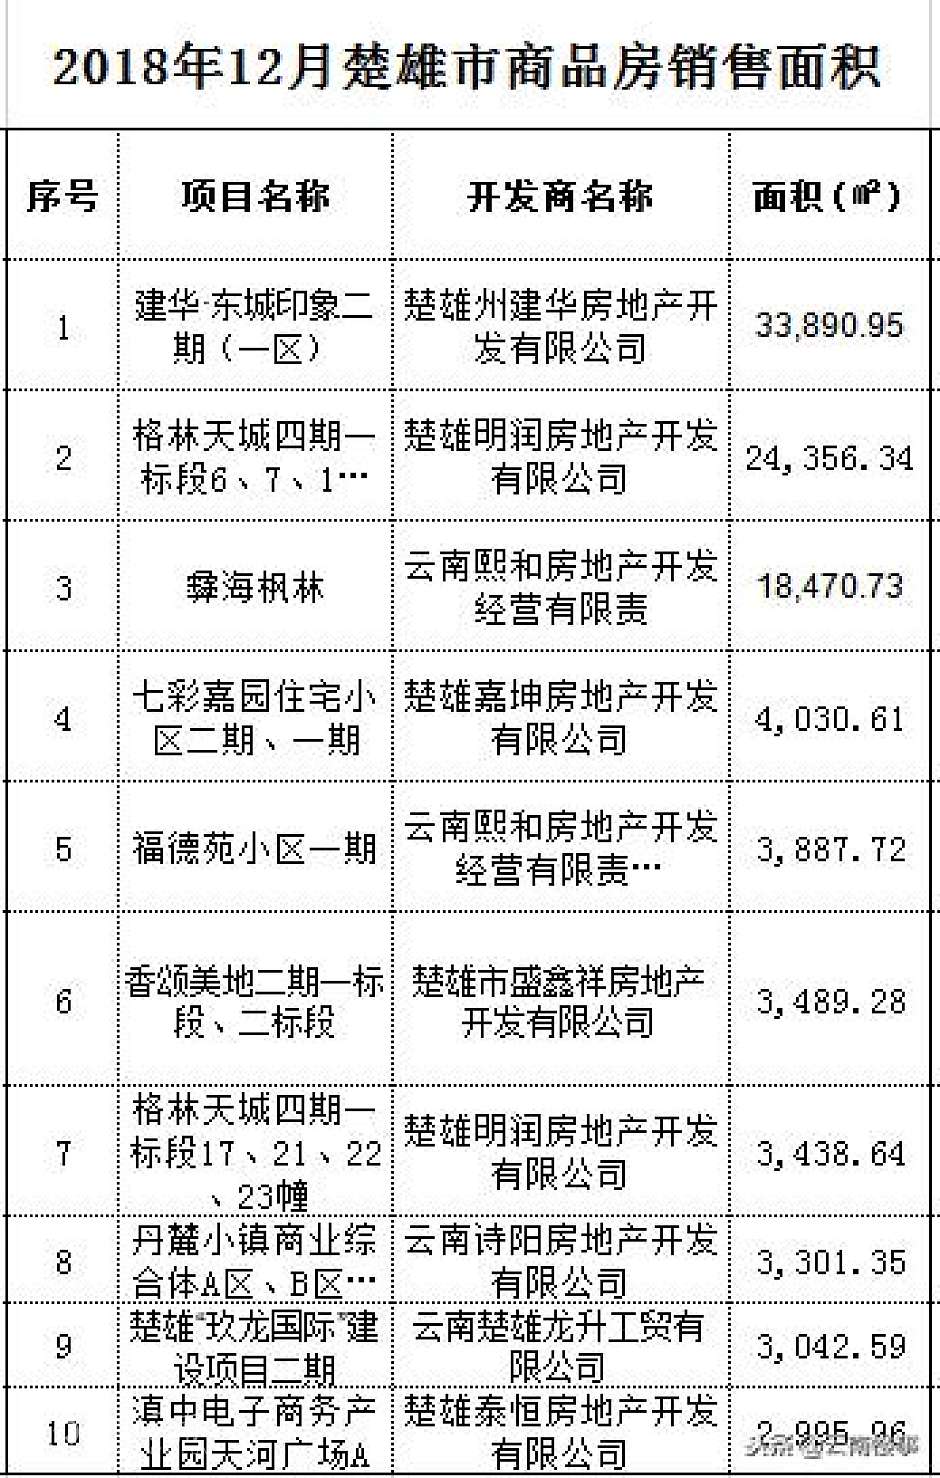 滇中城市楚雄:2018年12月房价均价4976元/㎡,环比下降1106%